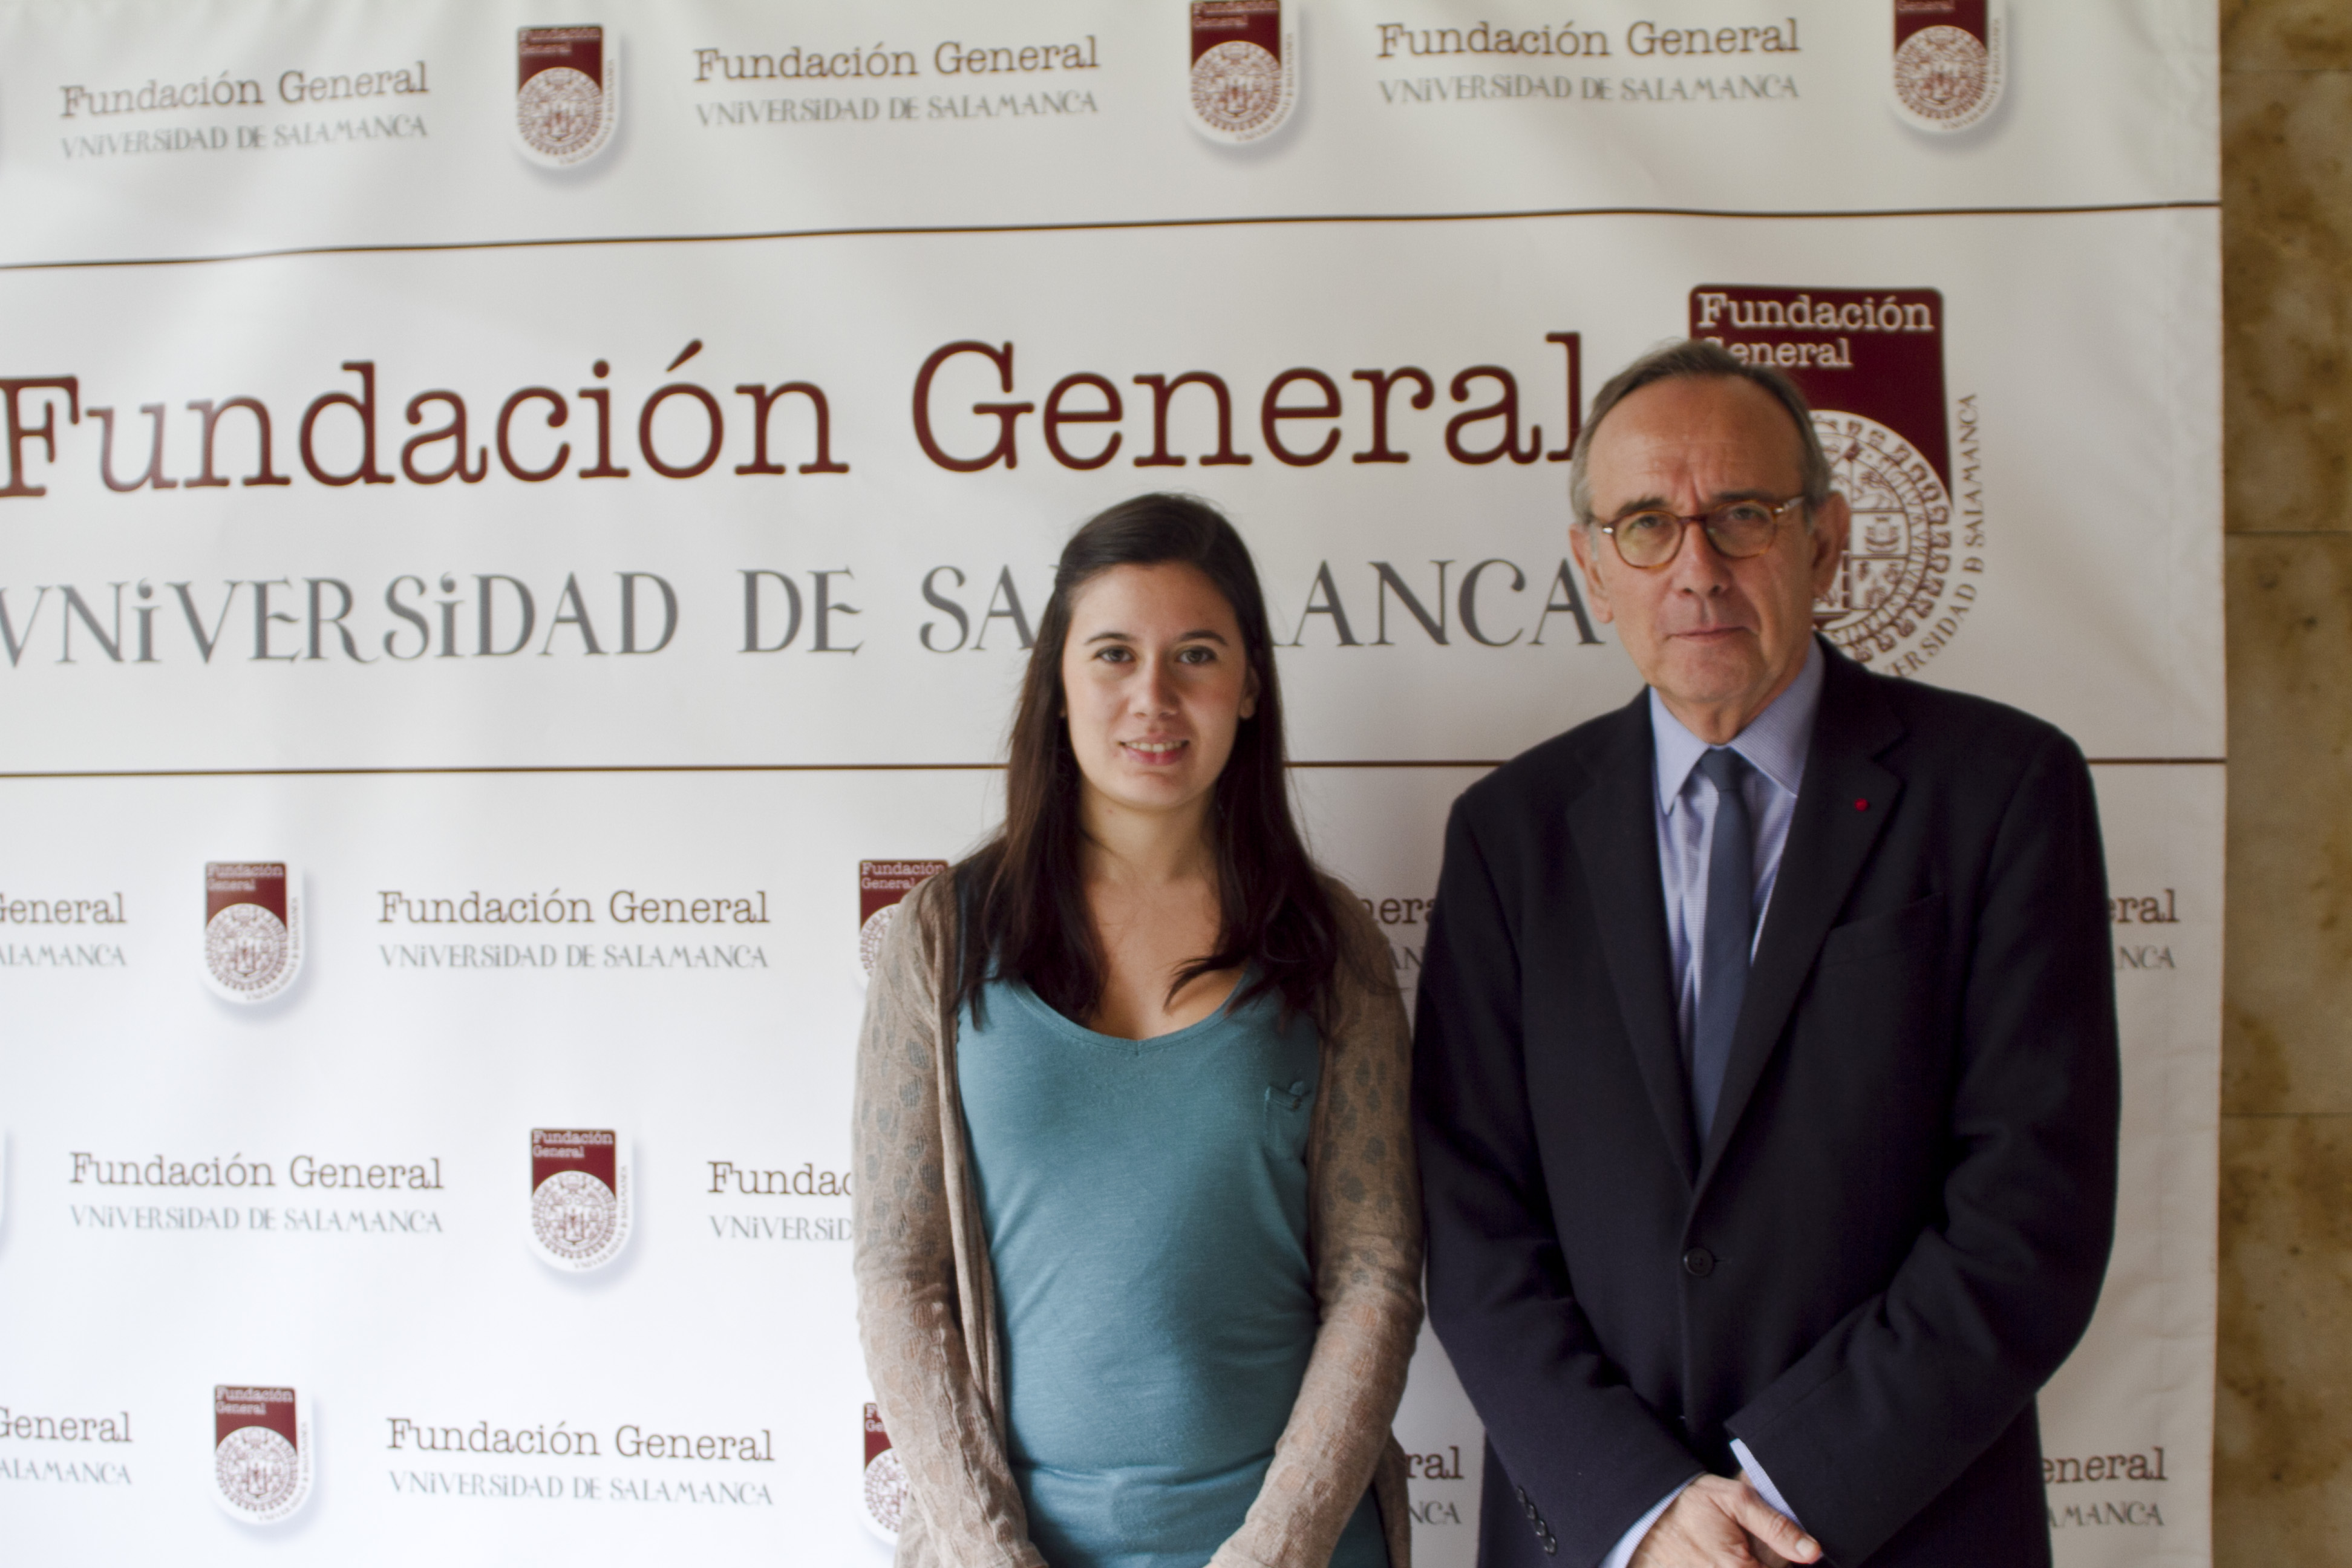 La Fundación General de la Universidad de Salamanca colabora con varias entidades sin ánimo de lucro